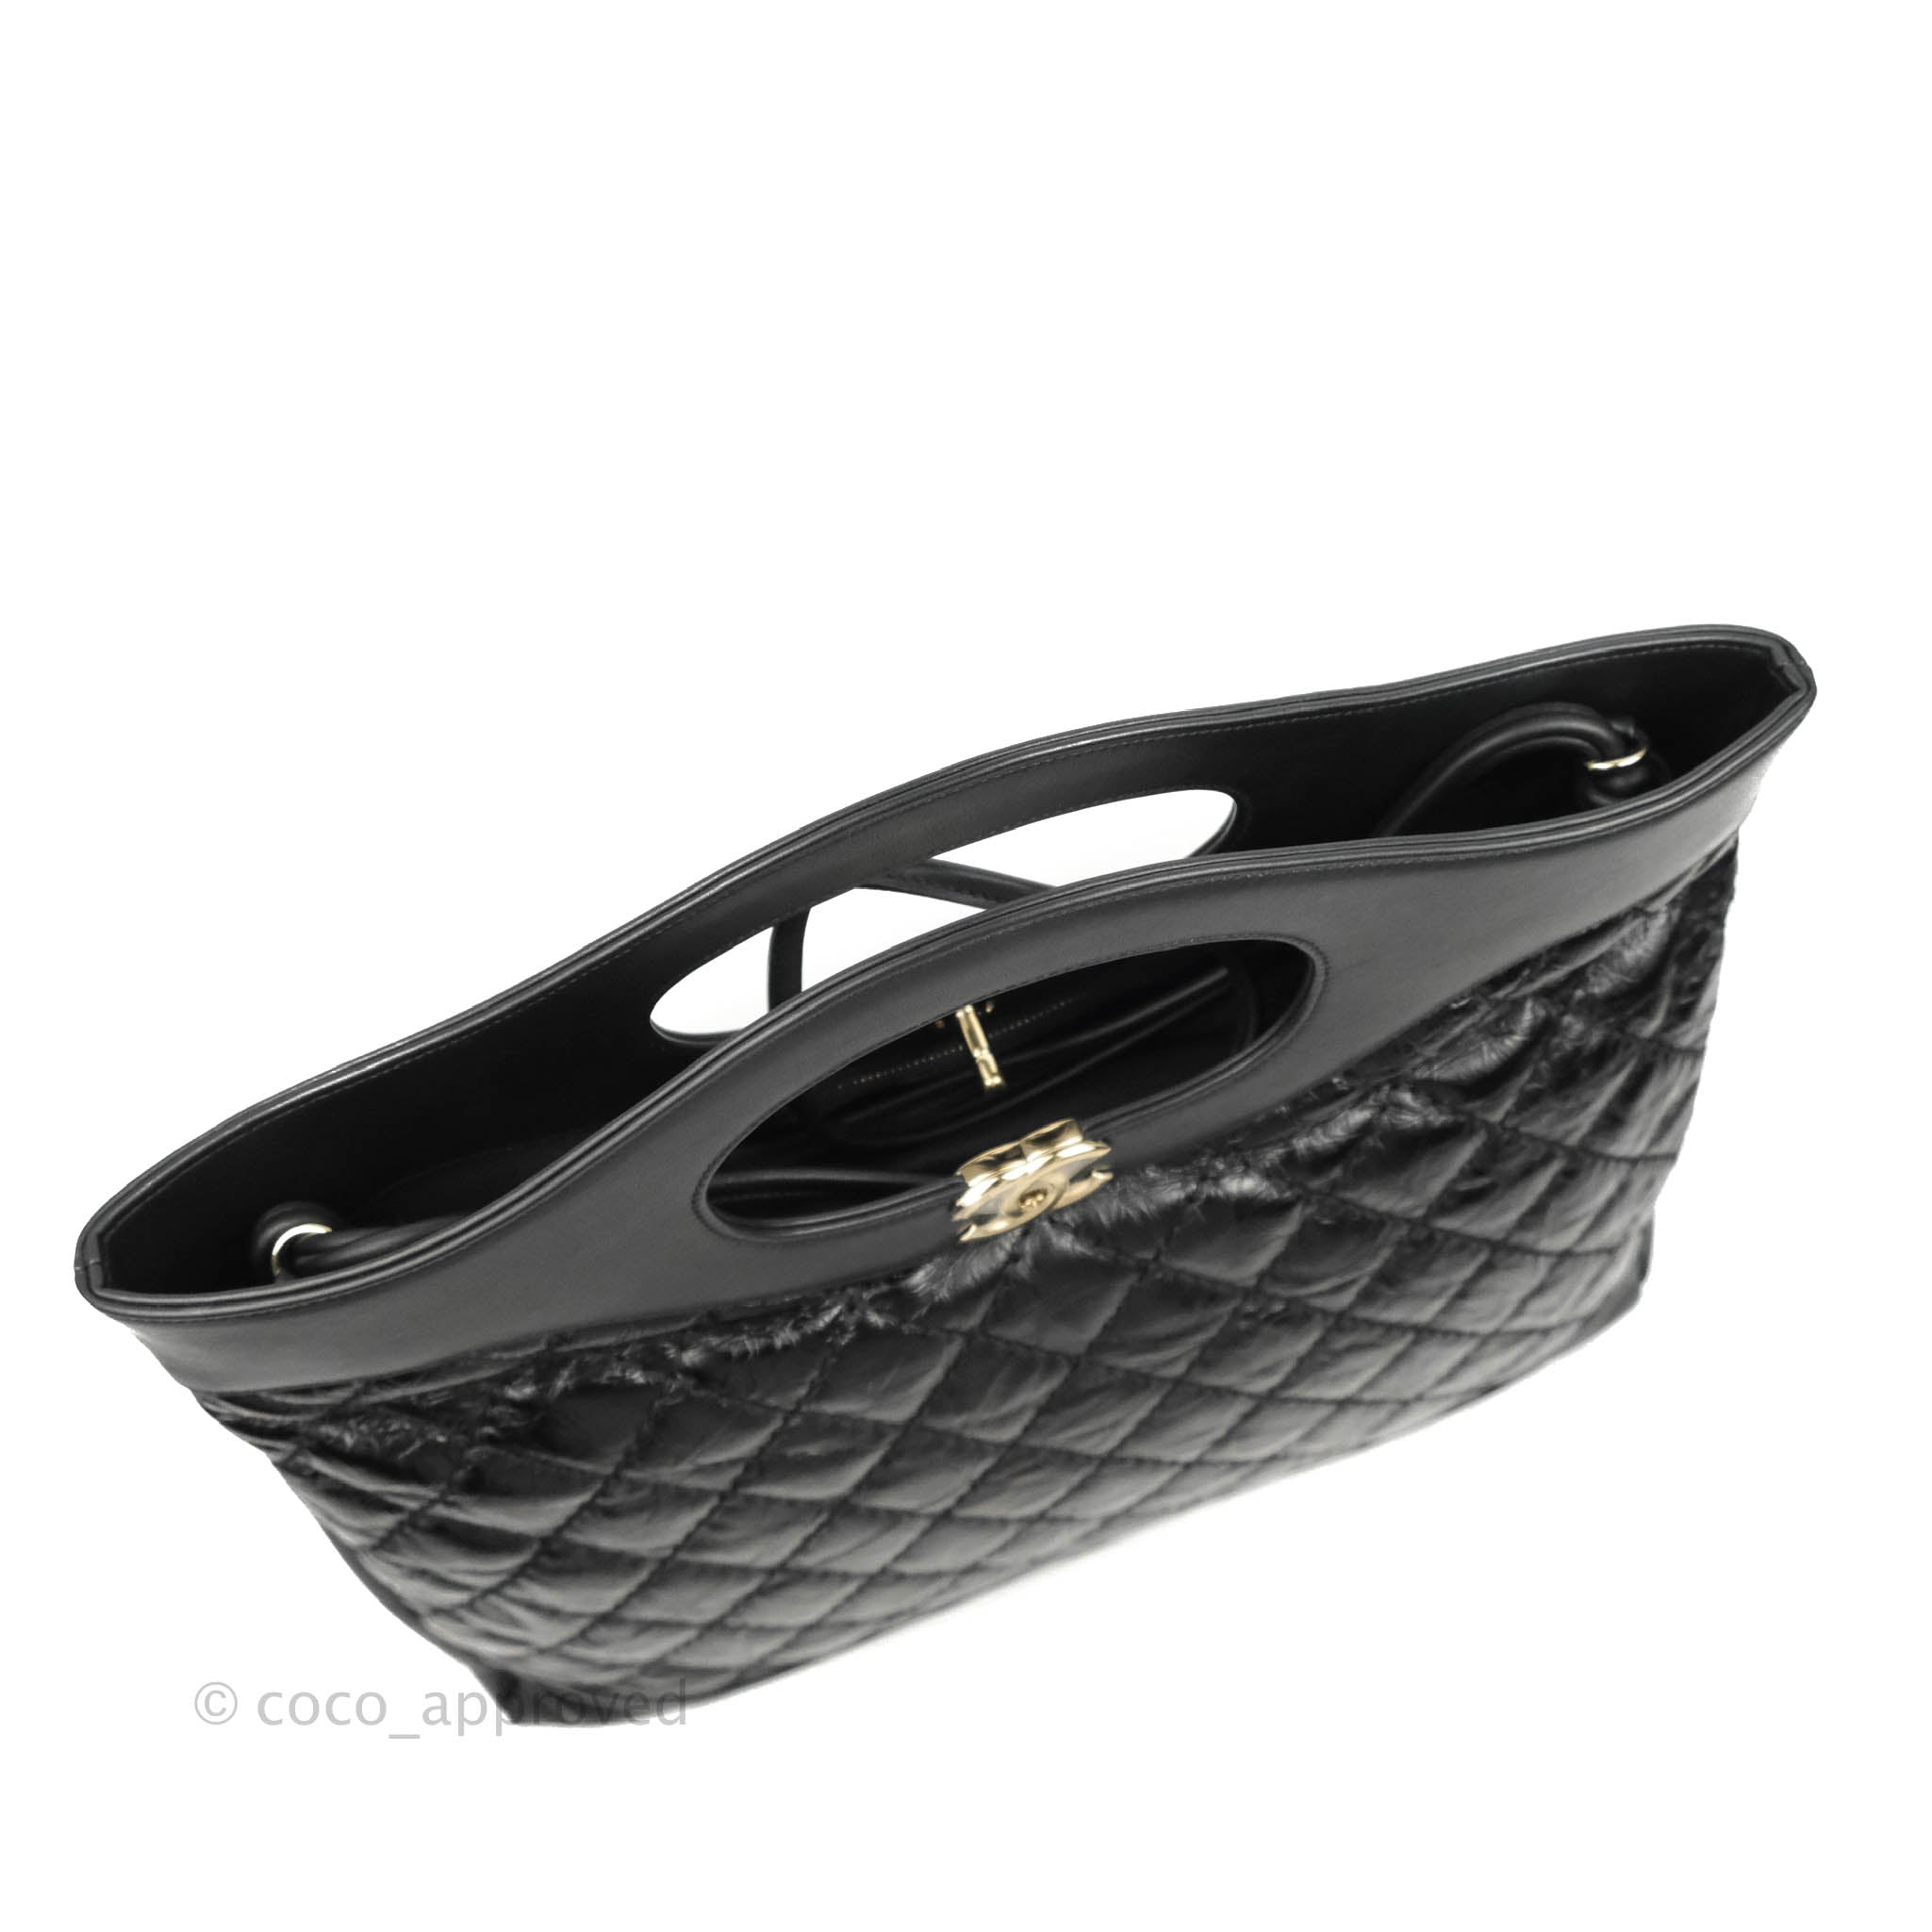 AUTHENTIC CHANEL BLACK Caviar Leather CC Logo Flap Bag Clutch $490.00 -  PicClick